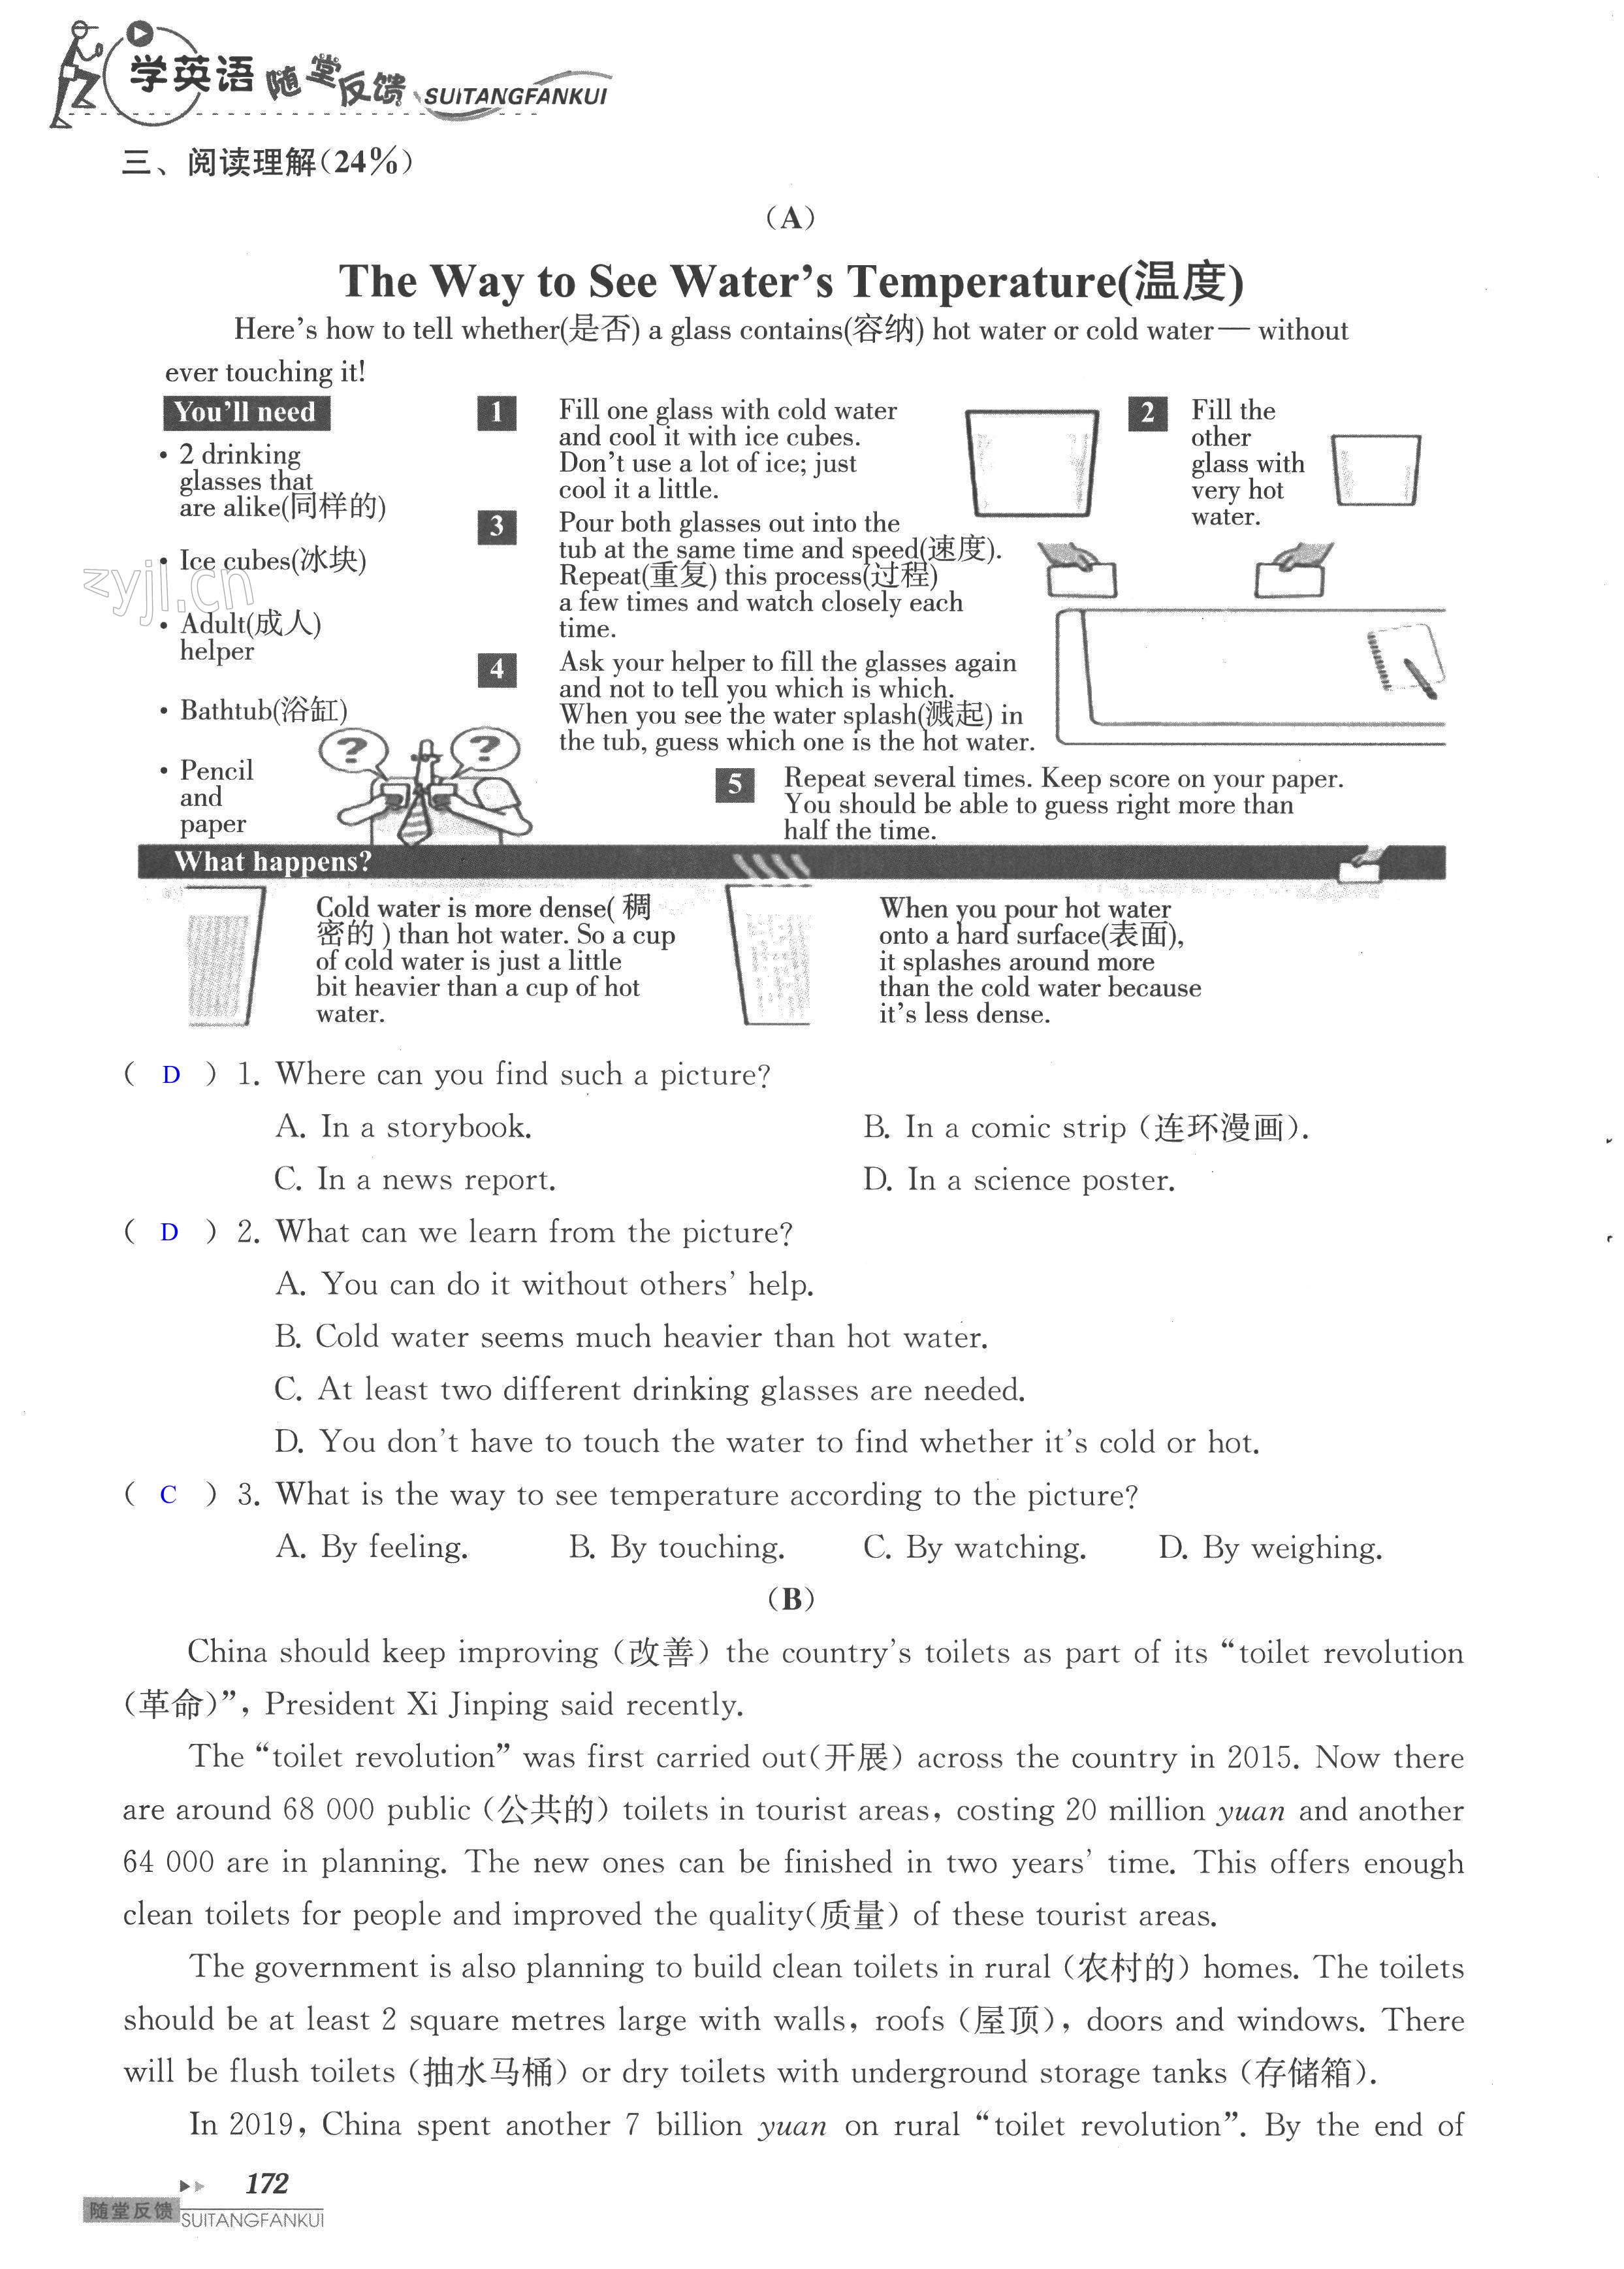 单元综合测试卷 Test for Unit 4 of 8A - 第172页